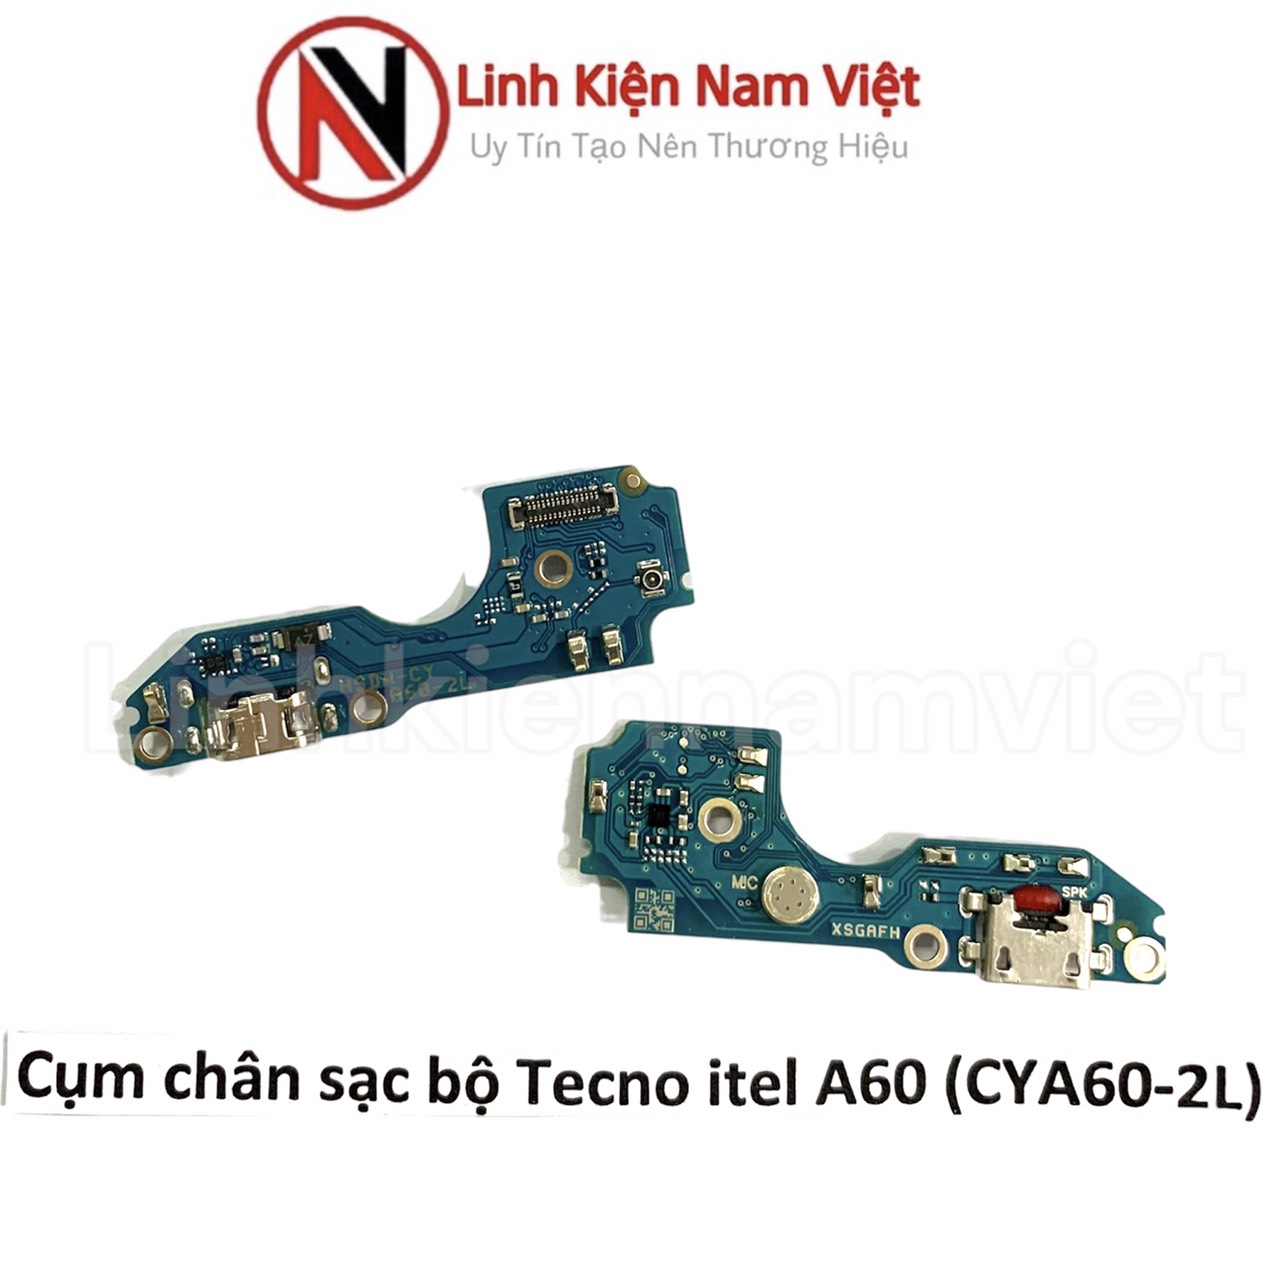 Cụm chân sạc bộ Tecno Itel A60 ( CYA60-2L )